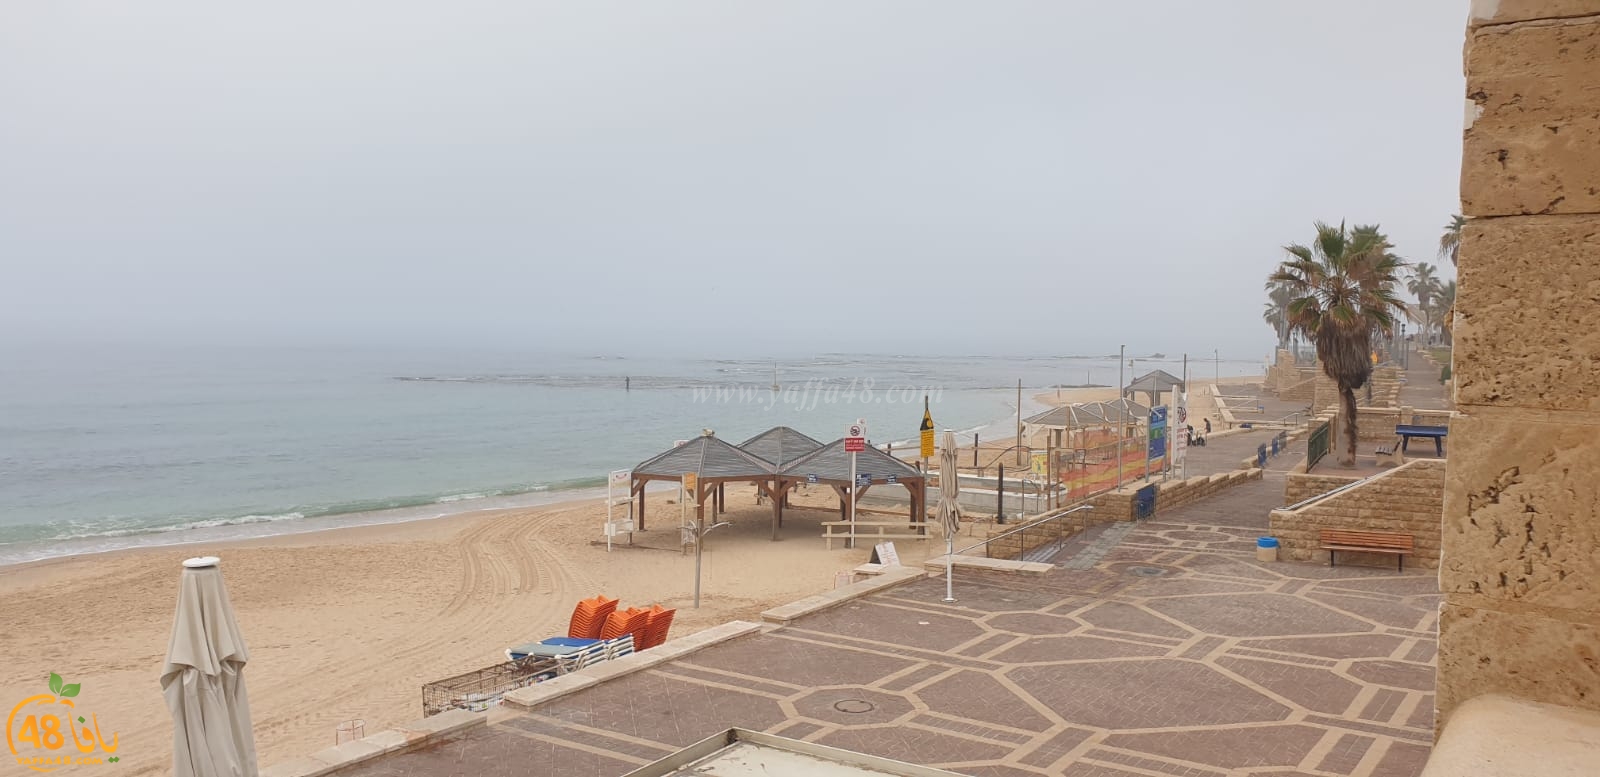  صور: ضباب كثيف يُخيّم على الأجواء في يافا وتدني مستوى الرؤية 